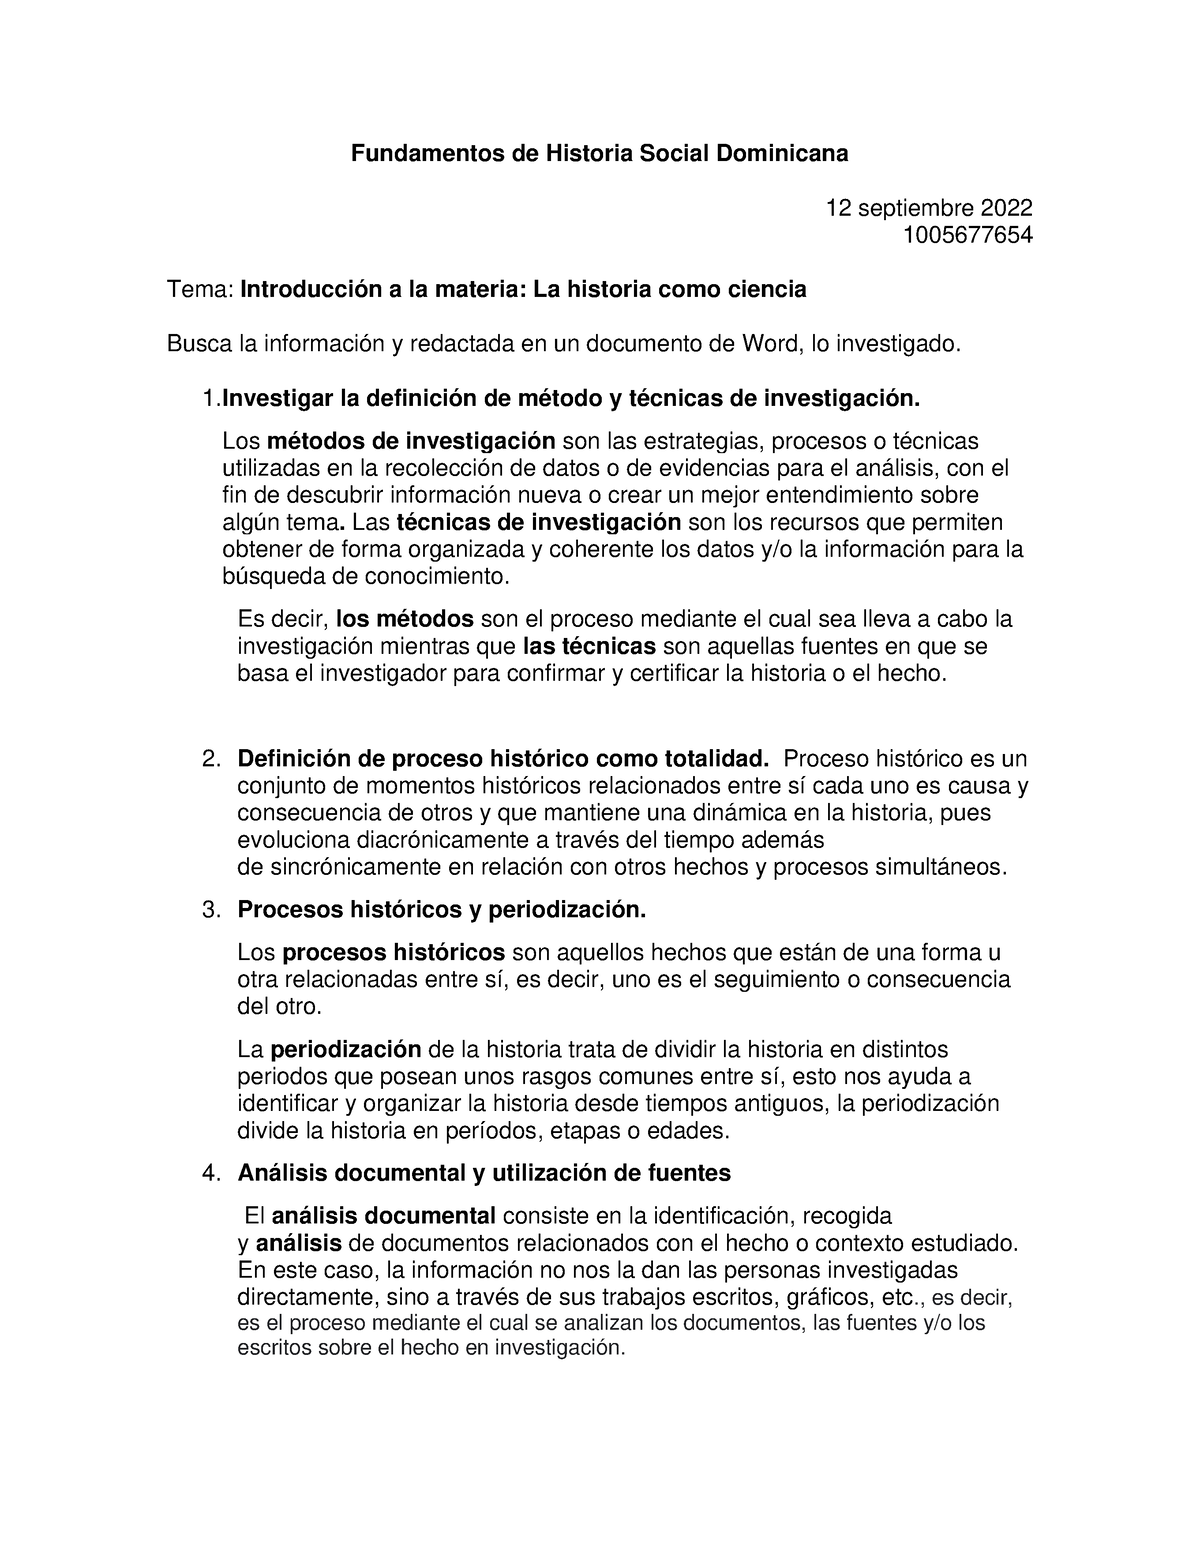 Fundamentos De Historia Social Dominicana Investigar La Definición De Método Y Técnicas De 5015